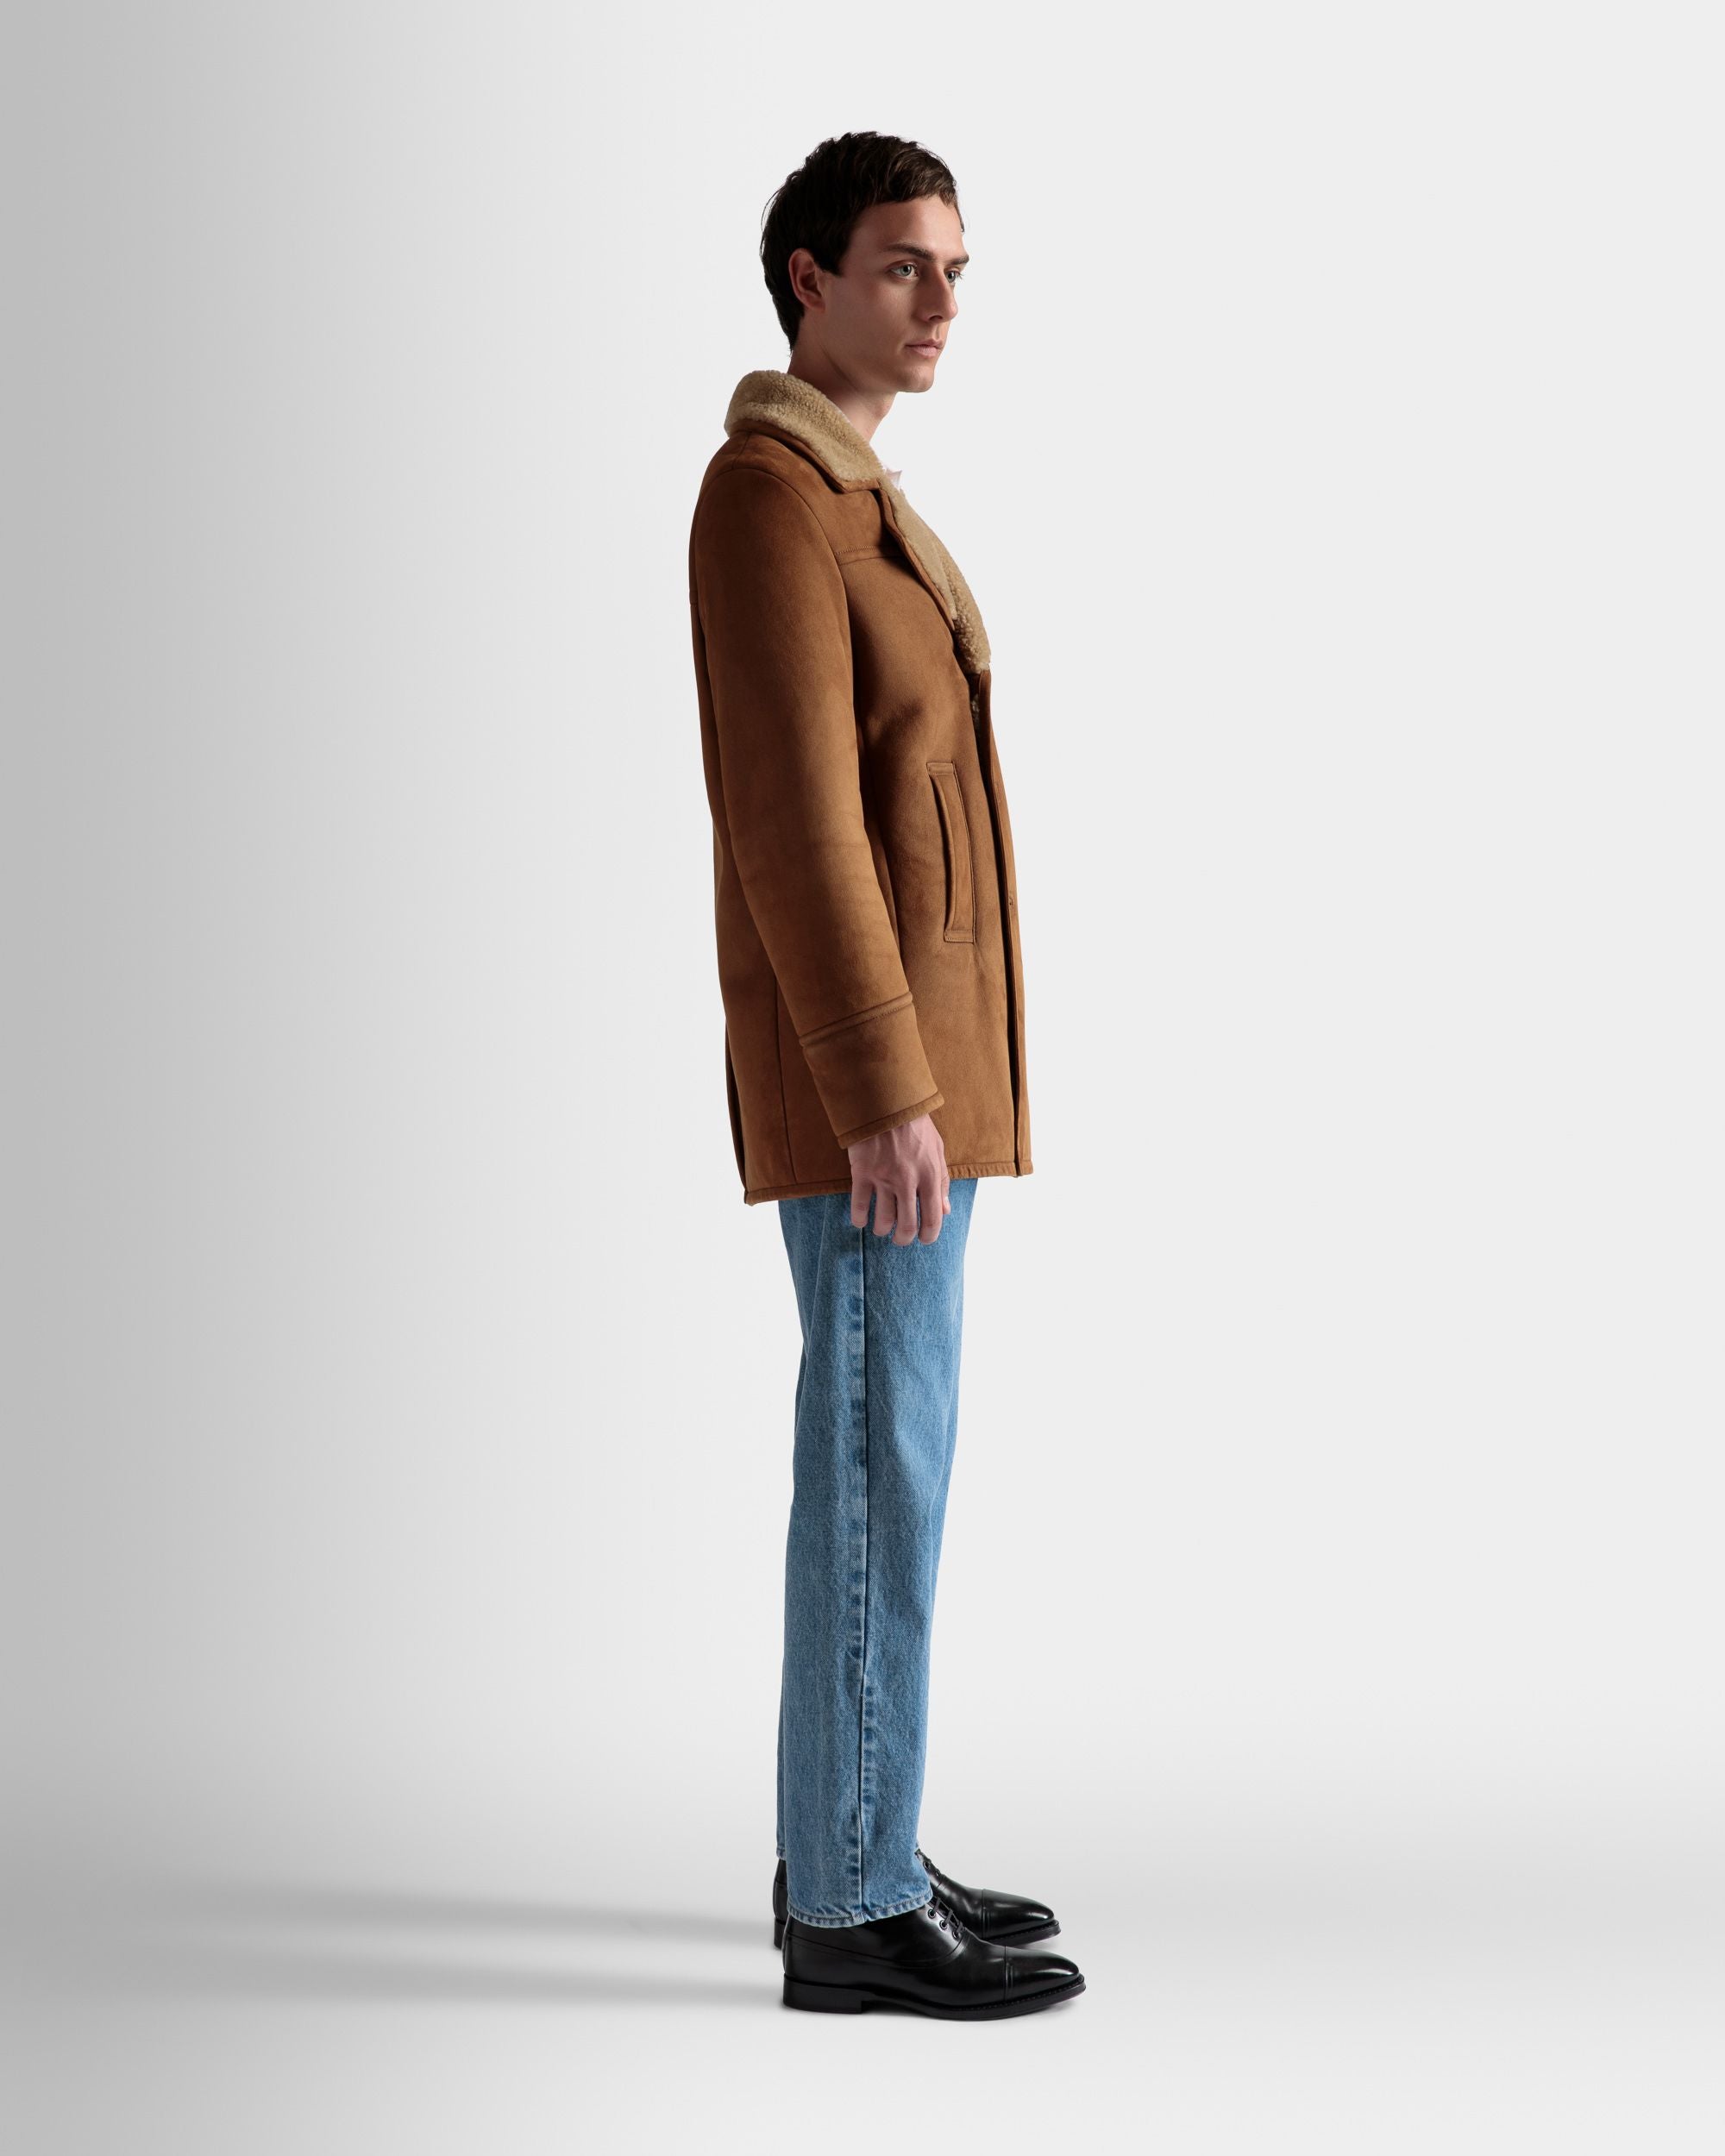 Zweireihiger Lammfellmantel | Jacken und Mäntel für Herren | Braunes Veloursleder | Bally | Model getragen 3/4 Vorderseite